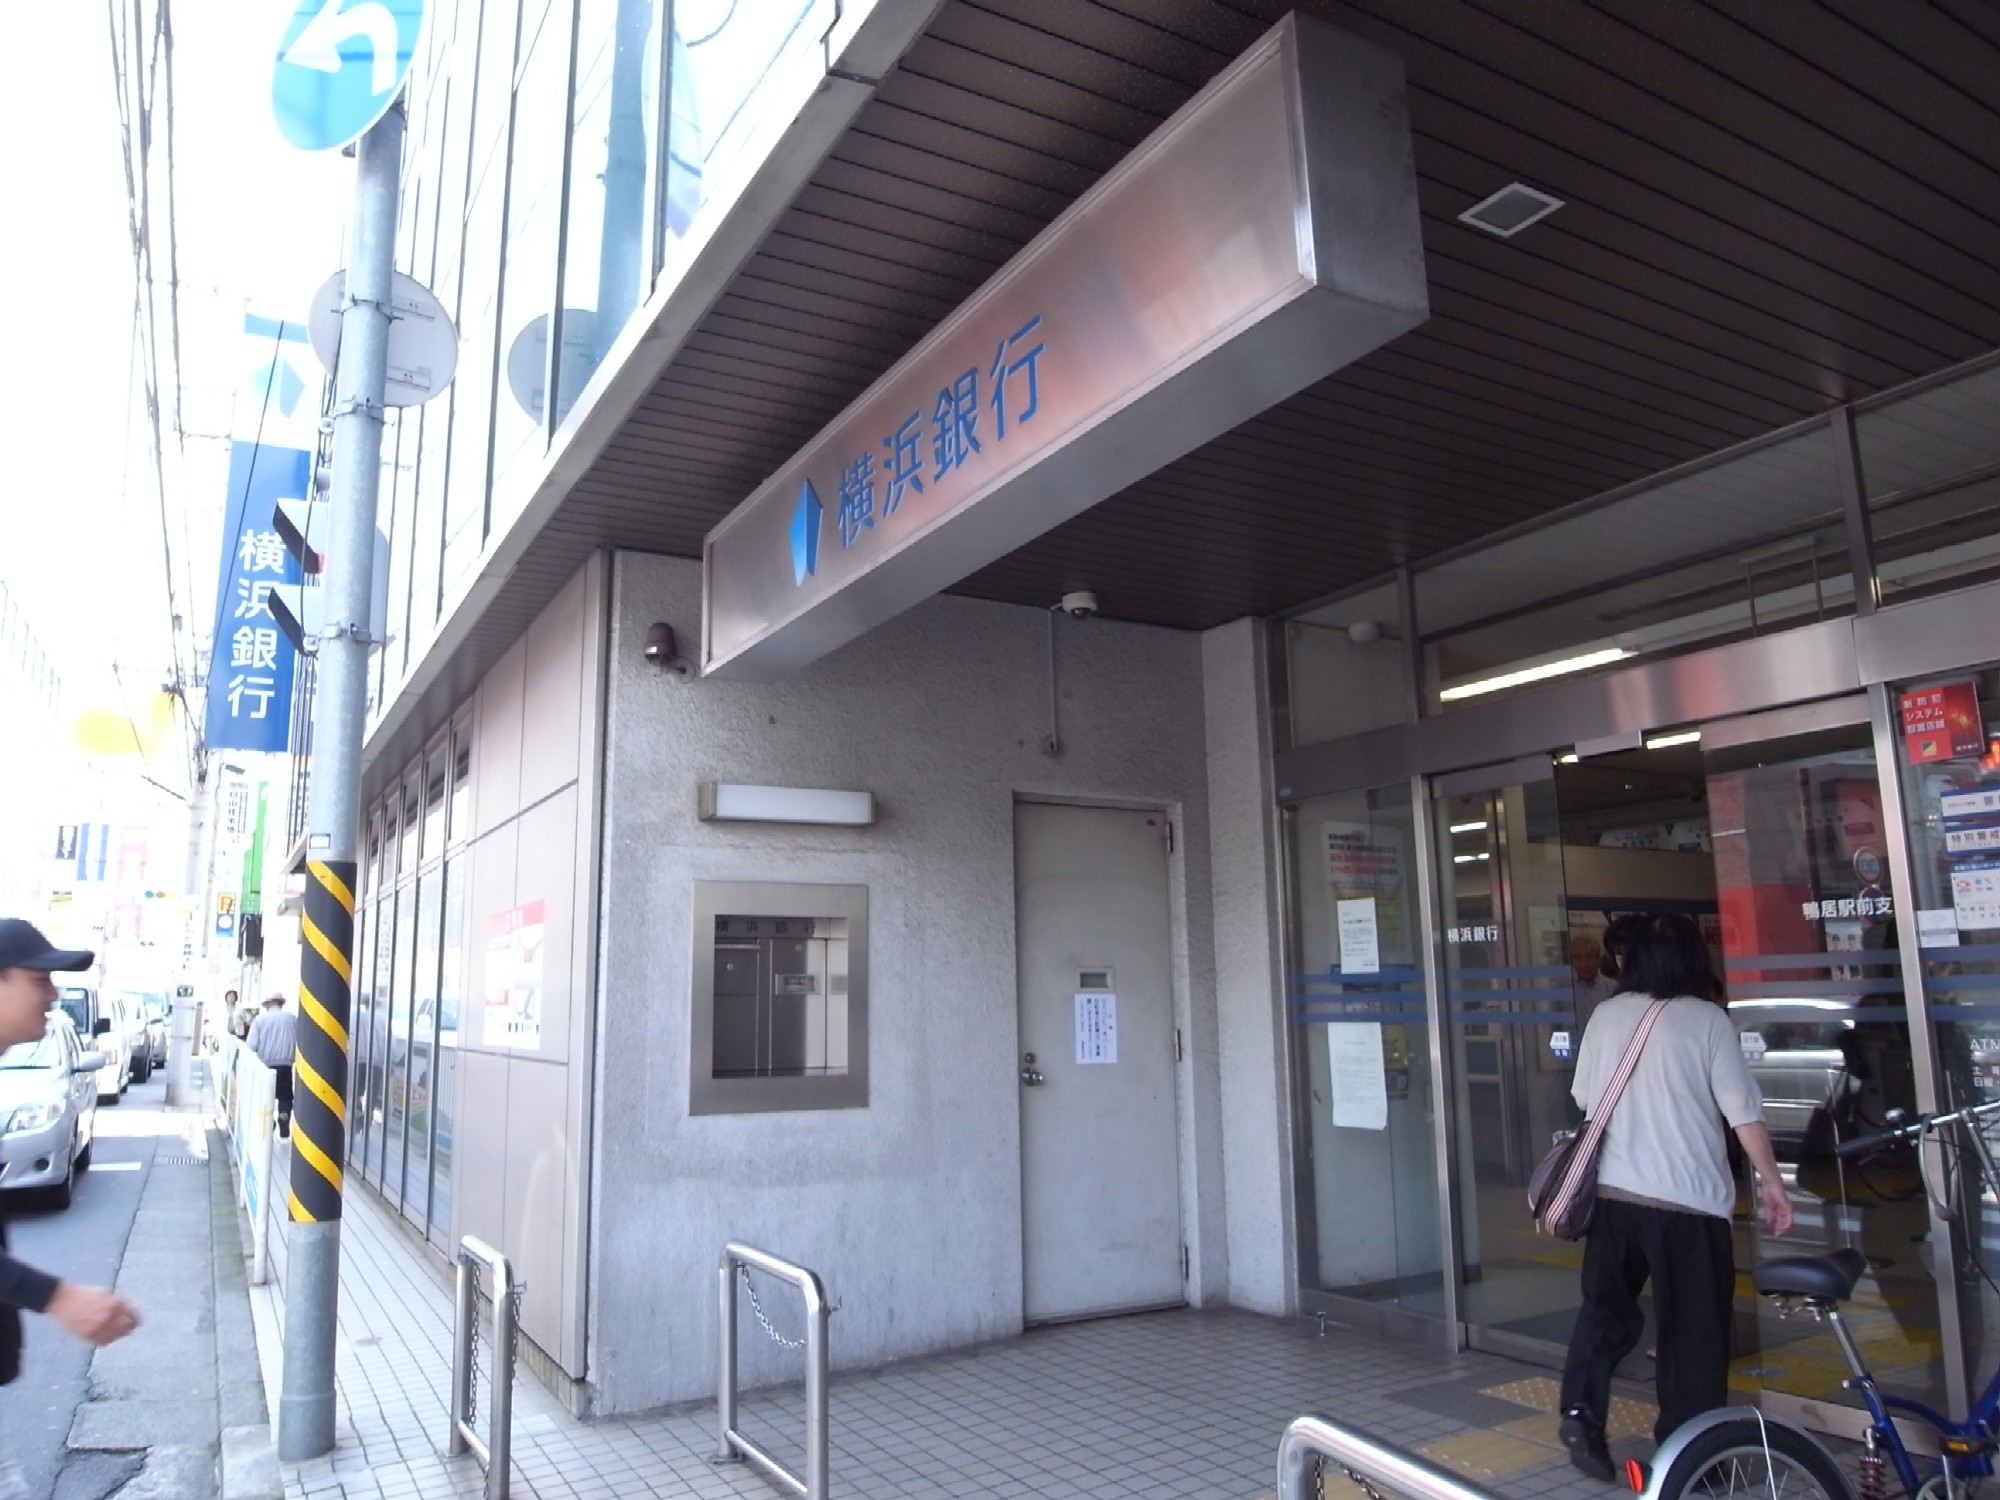 Bank. Bank of Yokohama lintel until Station Branch (Bank) 155m